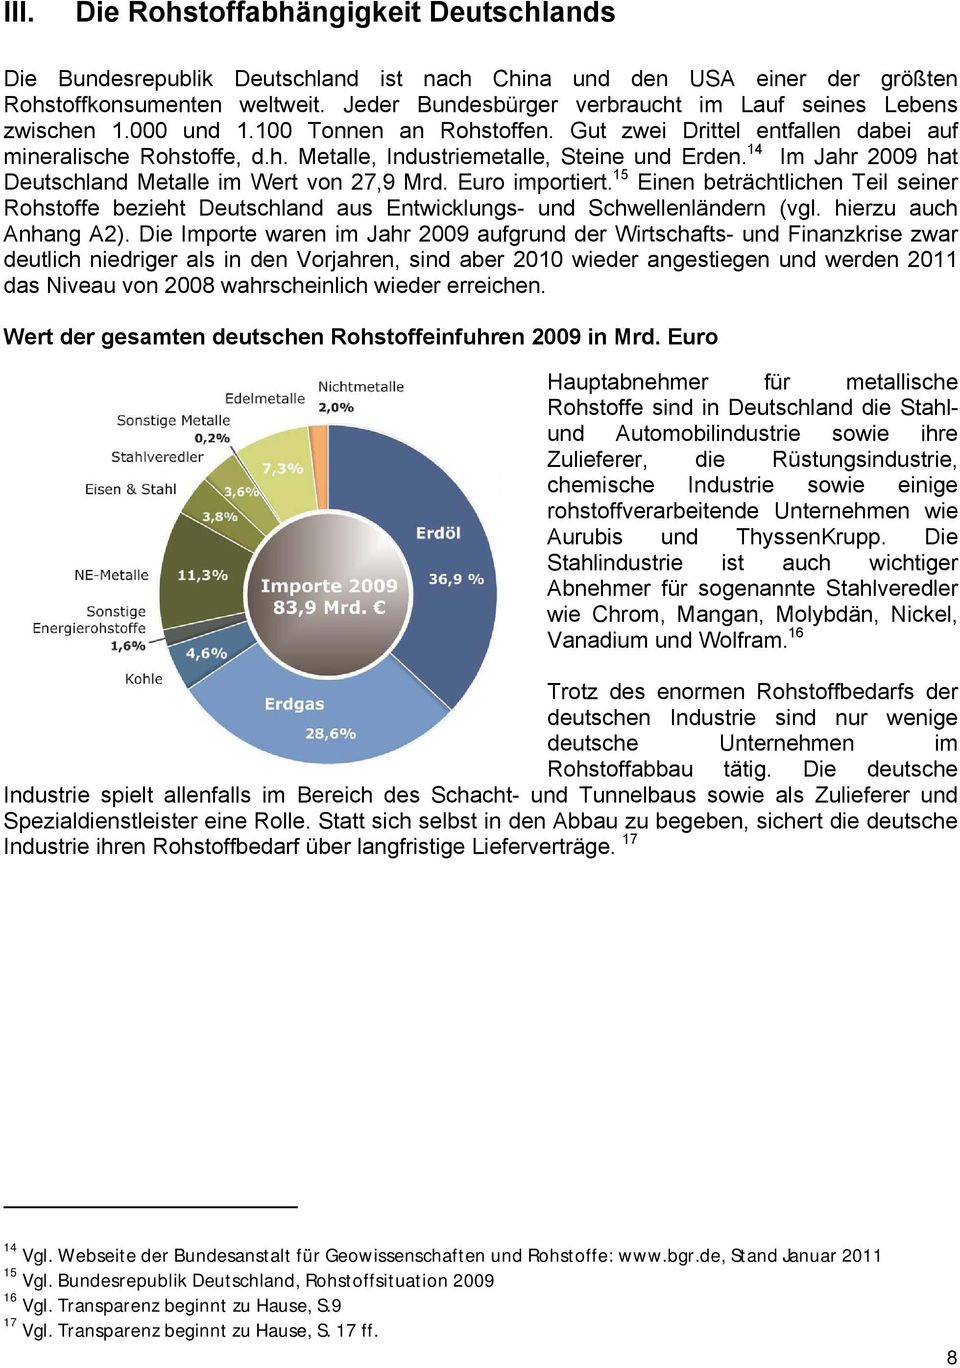 14 Im Jahr 2009 hat Deutschland Metalle im Wert von 27,9 Mrd. Euro importiert. 15 Einen beträchtlichen Teil seiner Rohstoffe bezieht Deutschland aus Entwicklungs- und Schwellenländern (vgl.